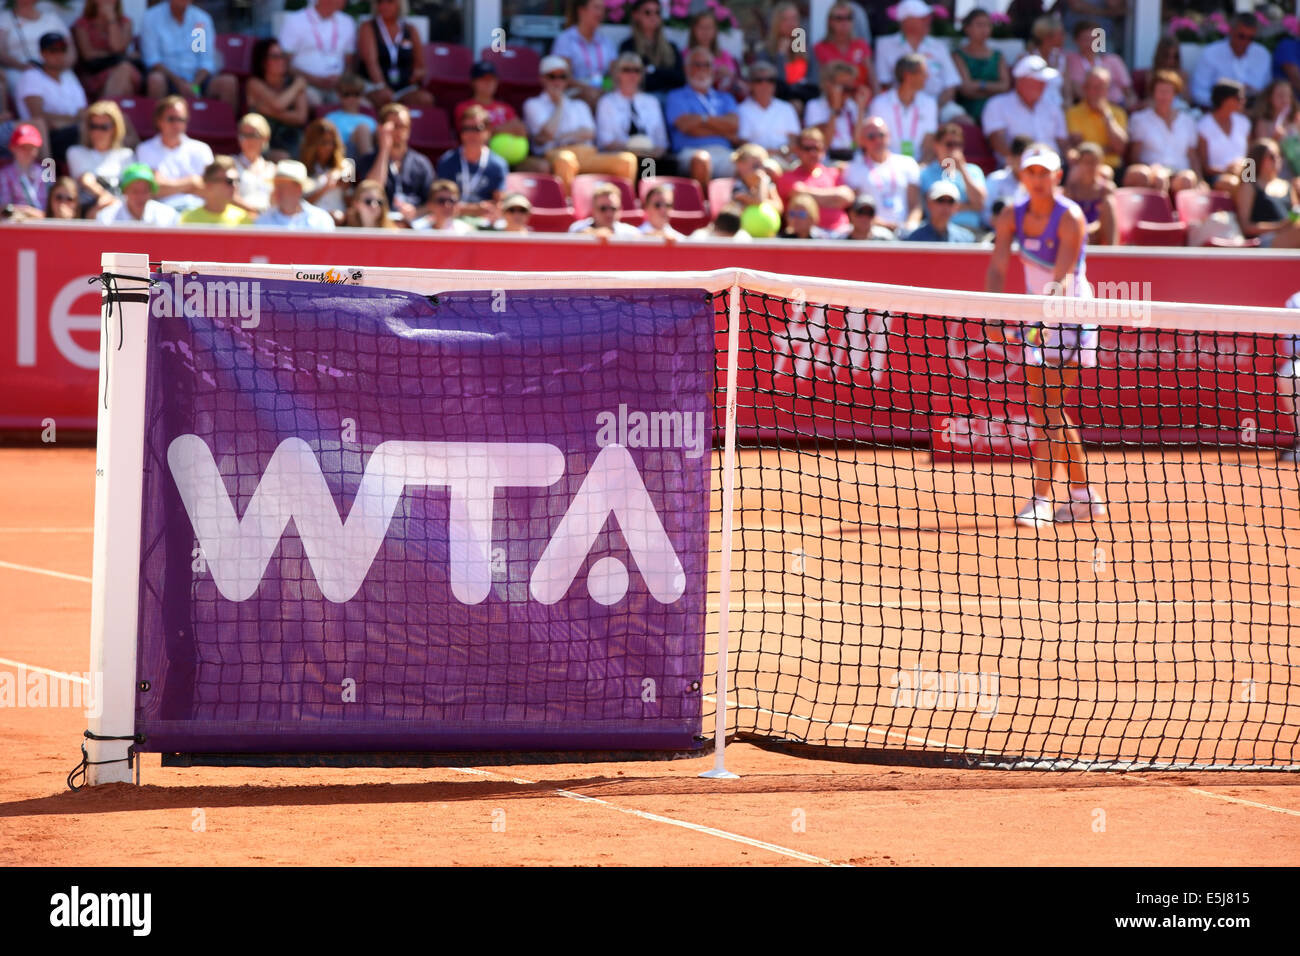 wta-logo  on tennis net Stock Photo